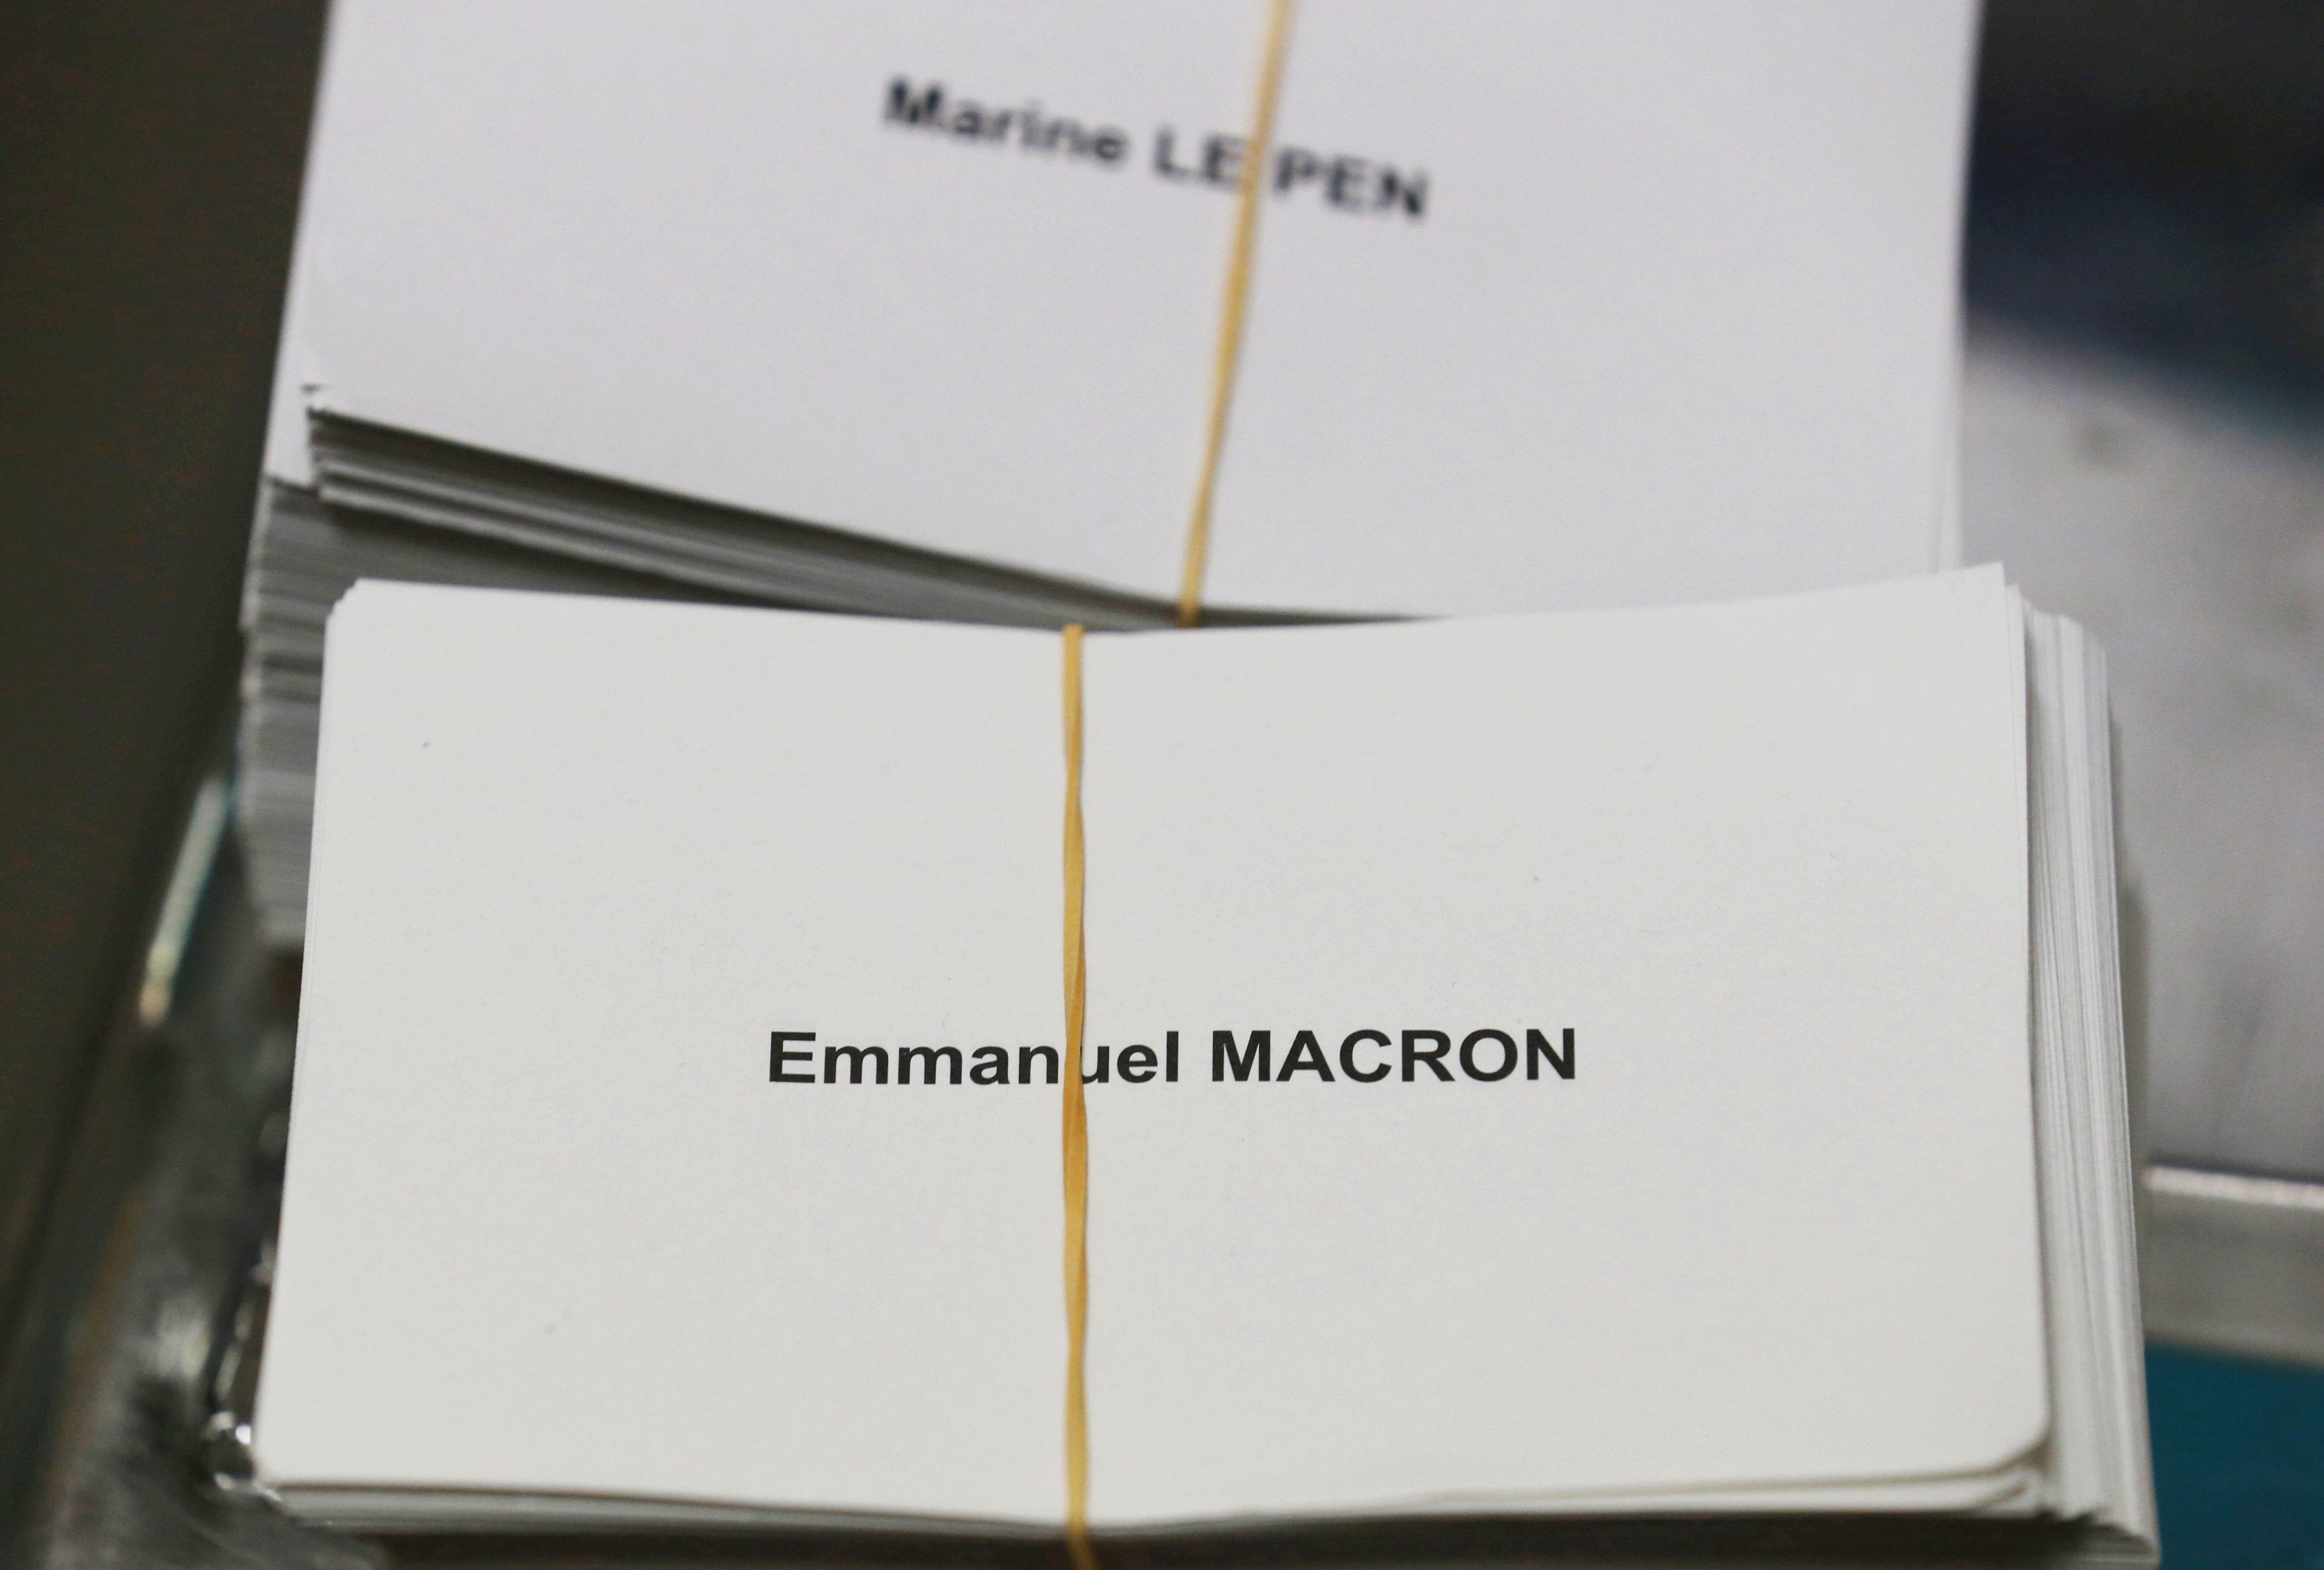 El balotaje se decidirá entre el candidato socioliberal Emmanuel Macron y la ultraderechista Marine Le Pen.